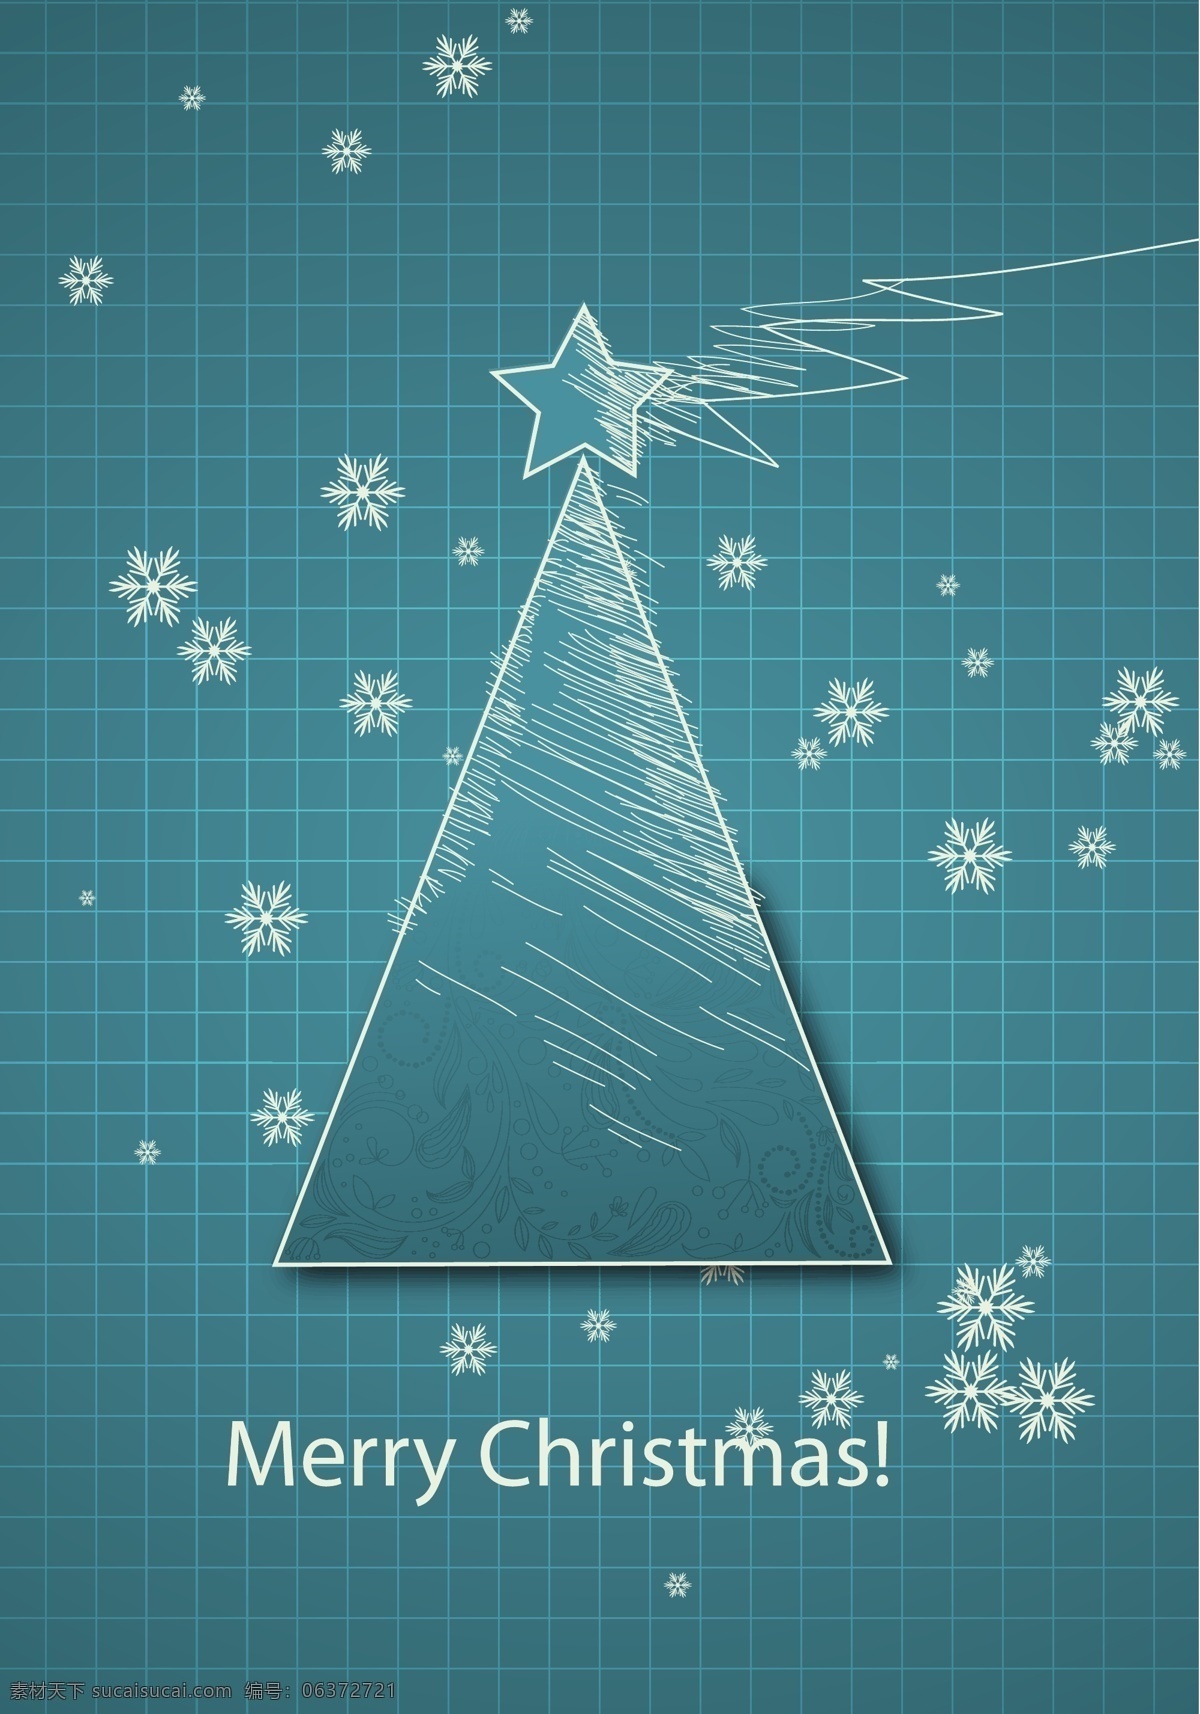 矢量 素雅 雪花 圣诞 卡片 创意卡片 圣诞节卡片 条纹 圣诞树设计 节日素材